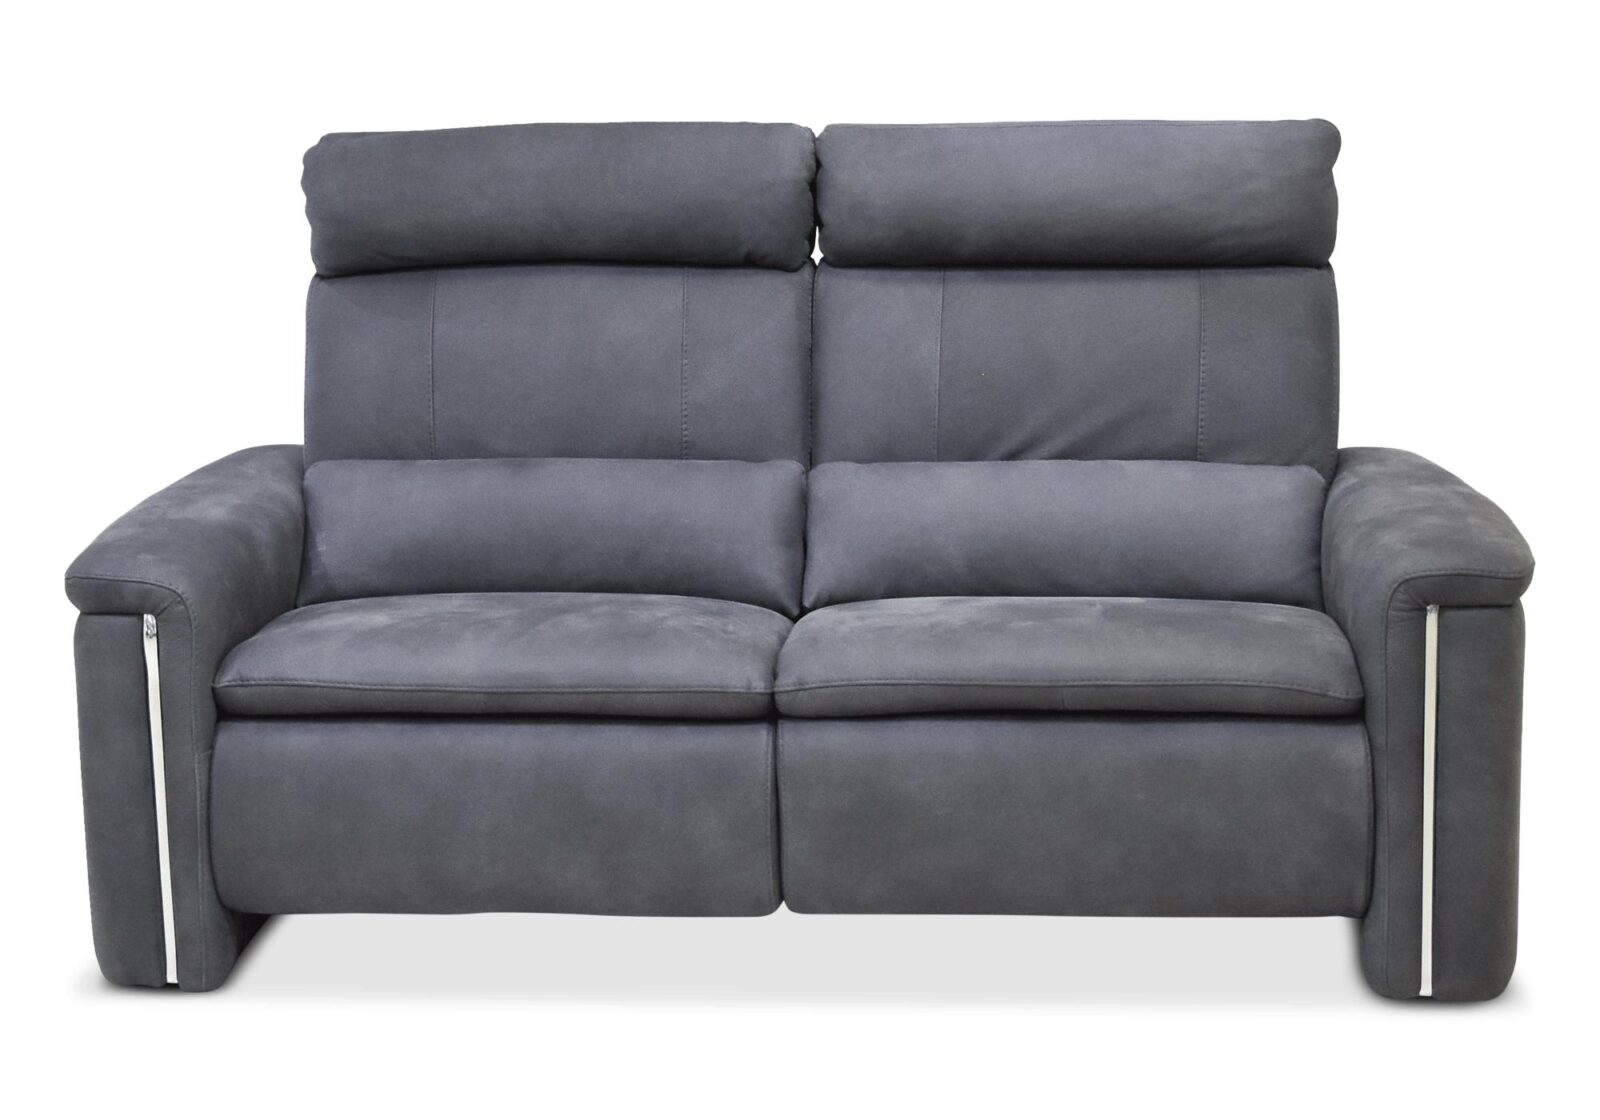 2er Sofa Classic mit Tannenholzstruktur. Bezug: Leder. Farbe: Grau. Erhältlich bei Möbel Gallati.